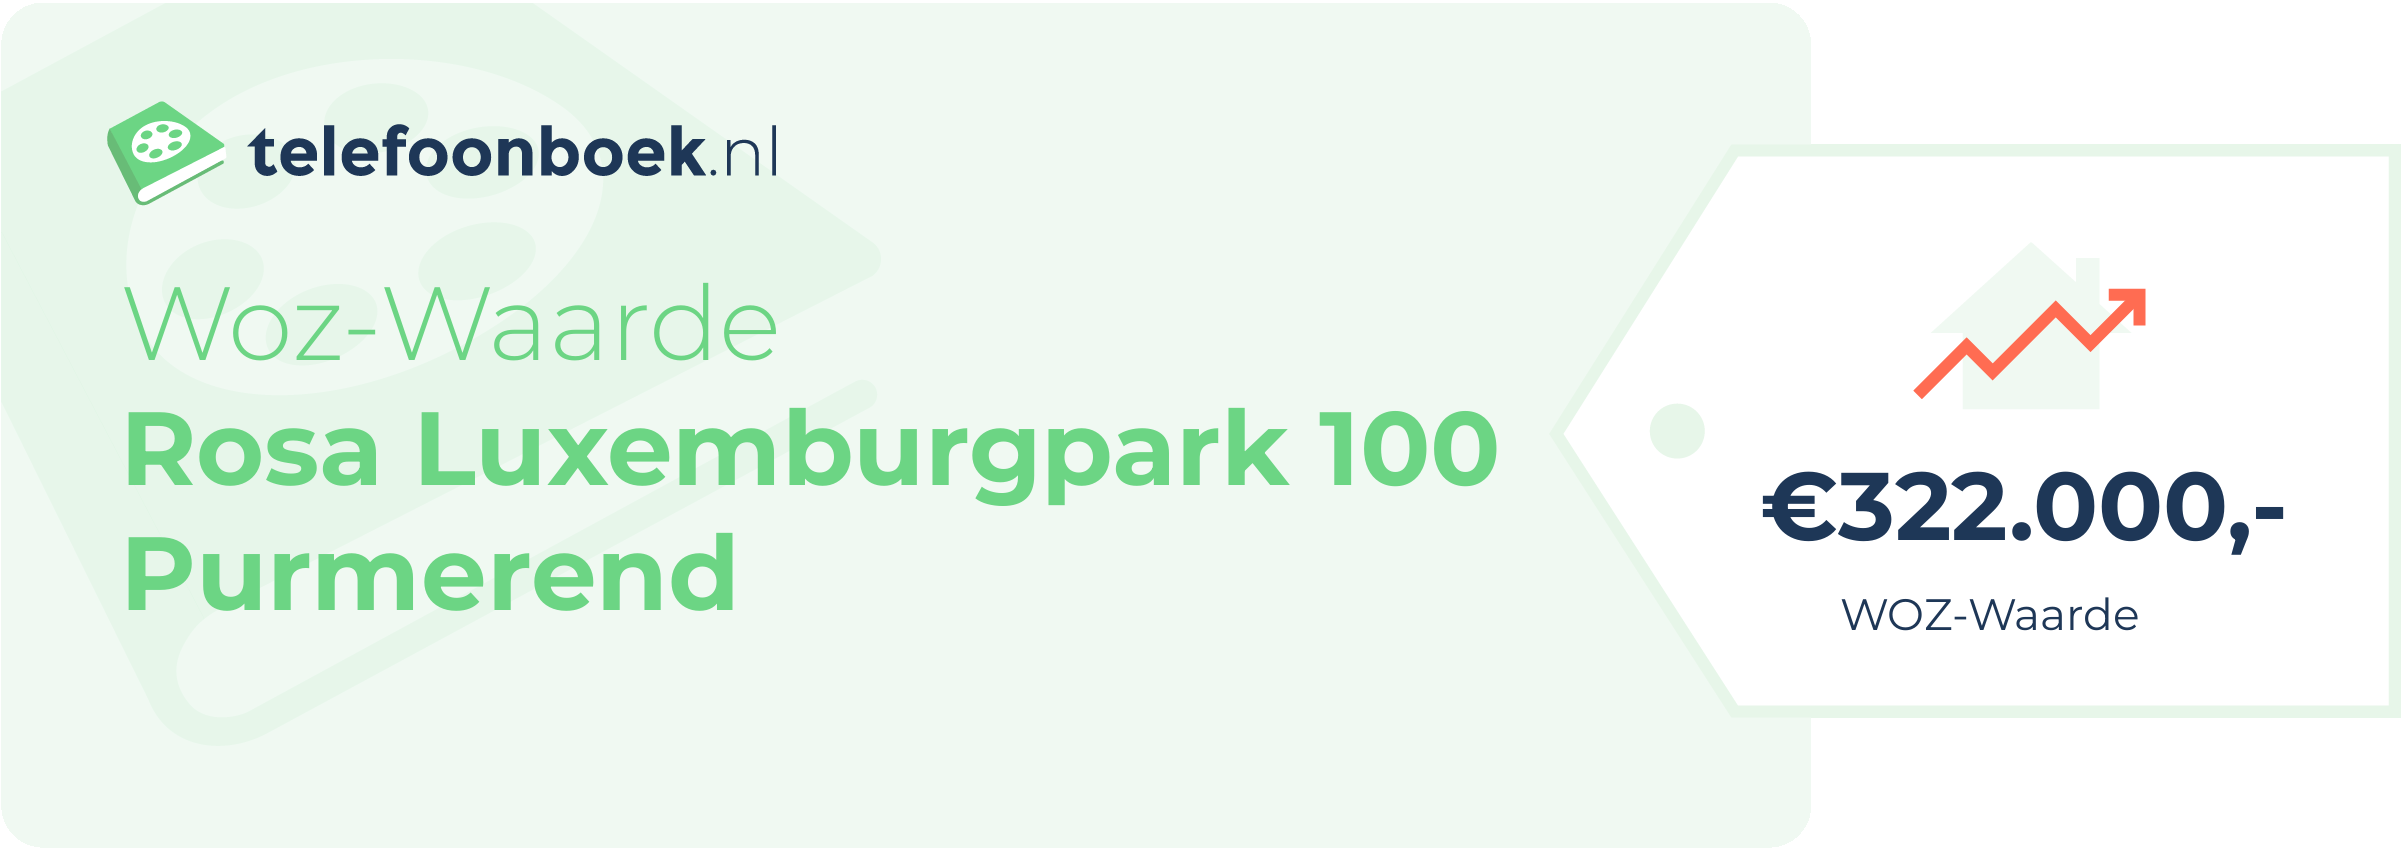 WOZ-waarde Rosa Luxemburgpark 100 Purmerend